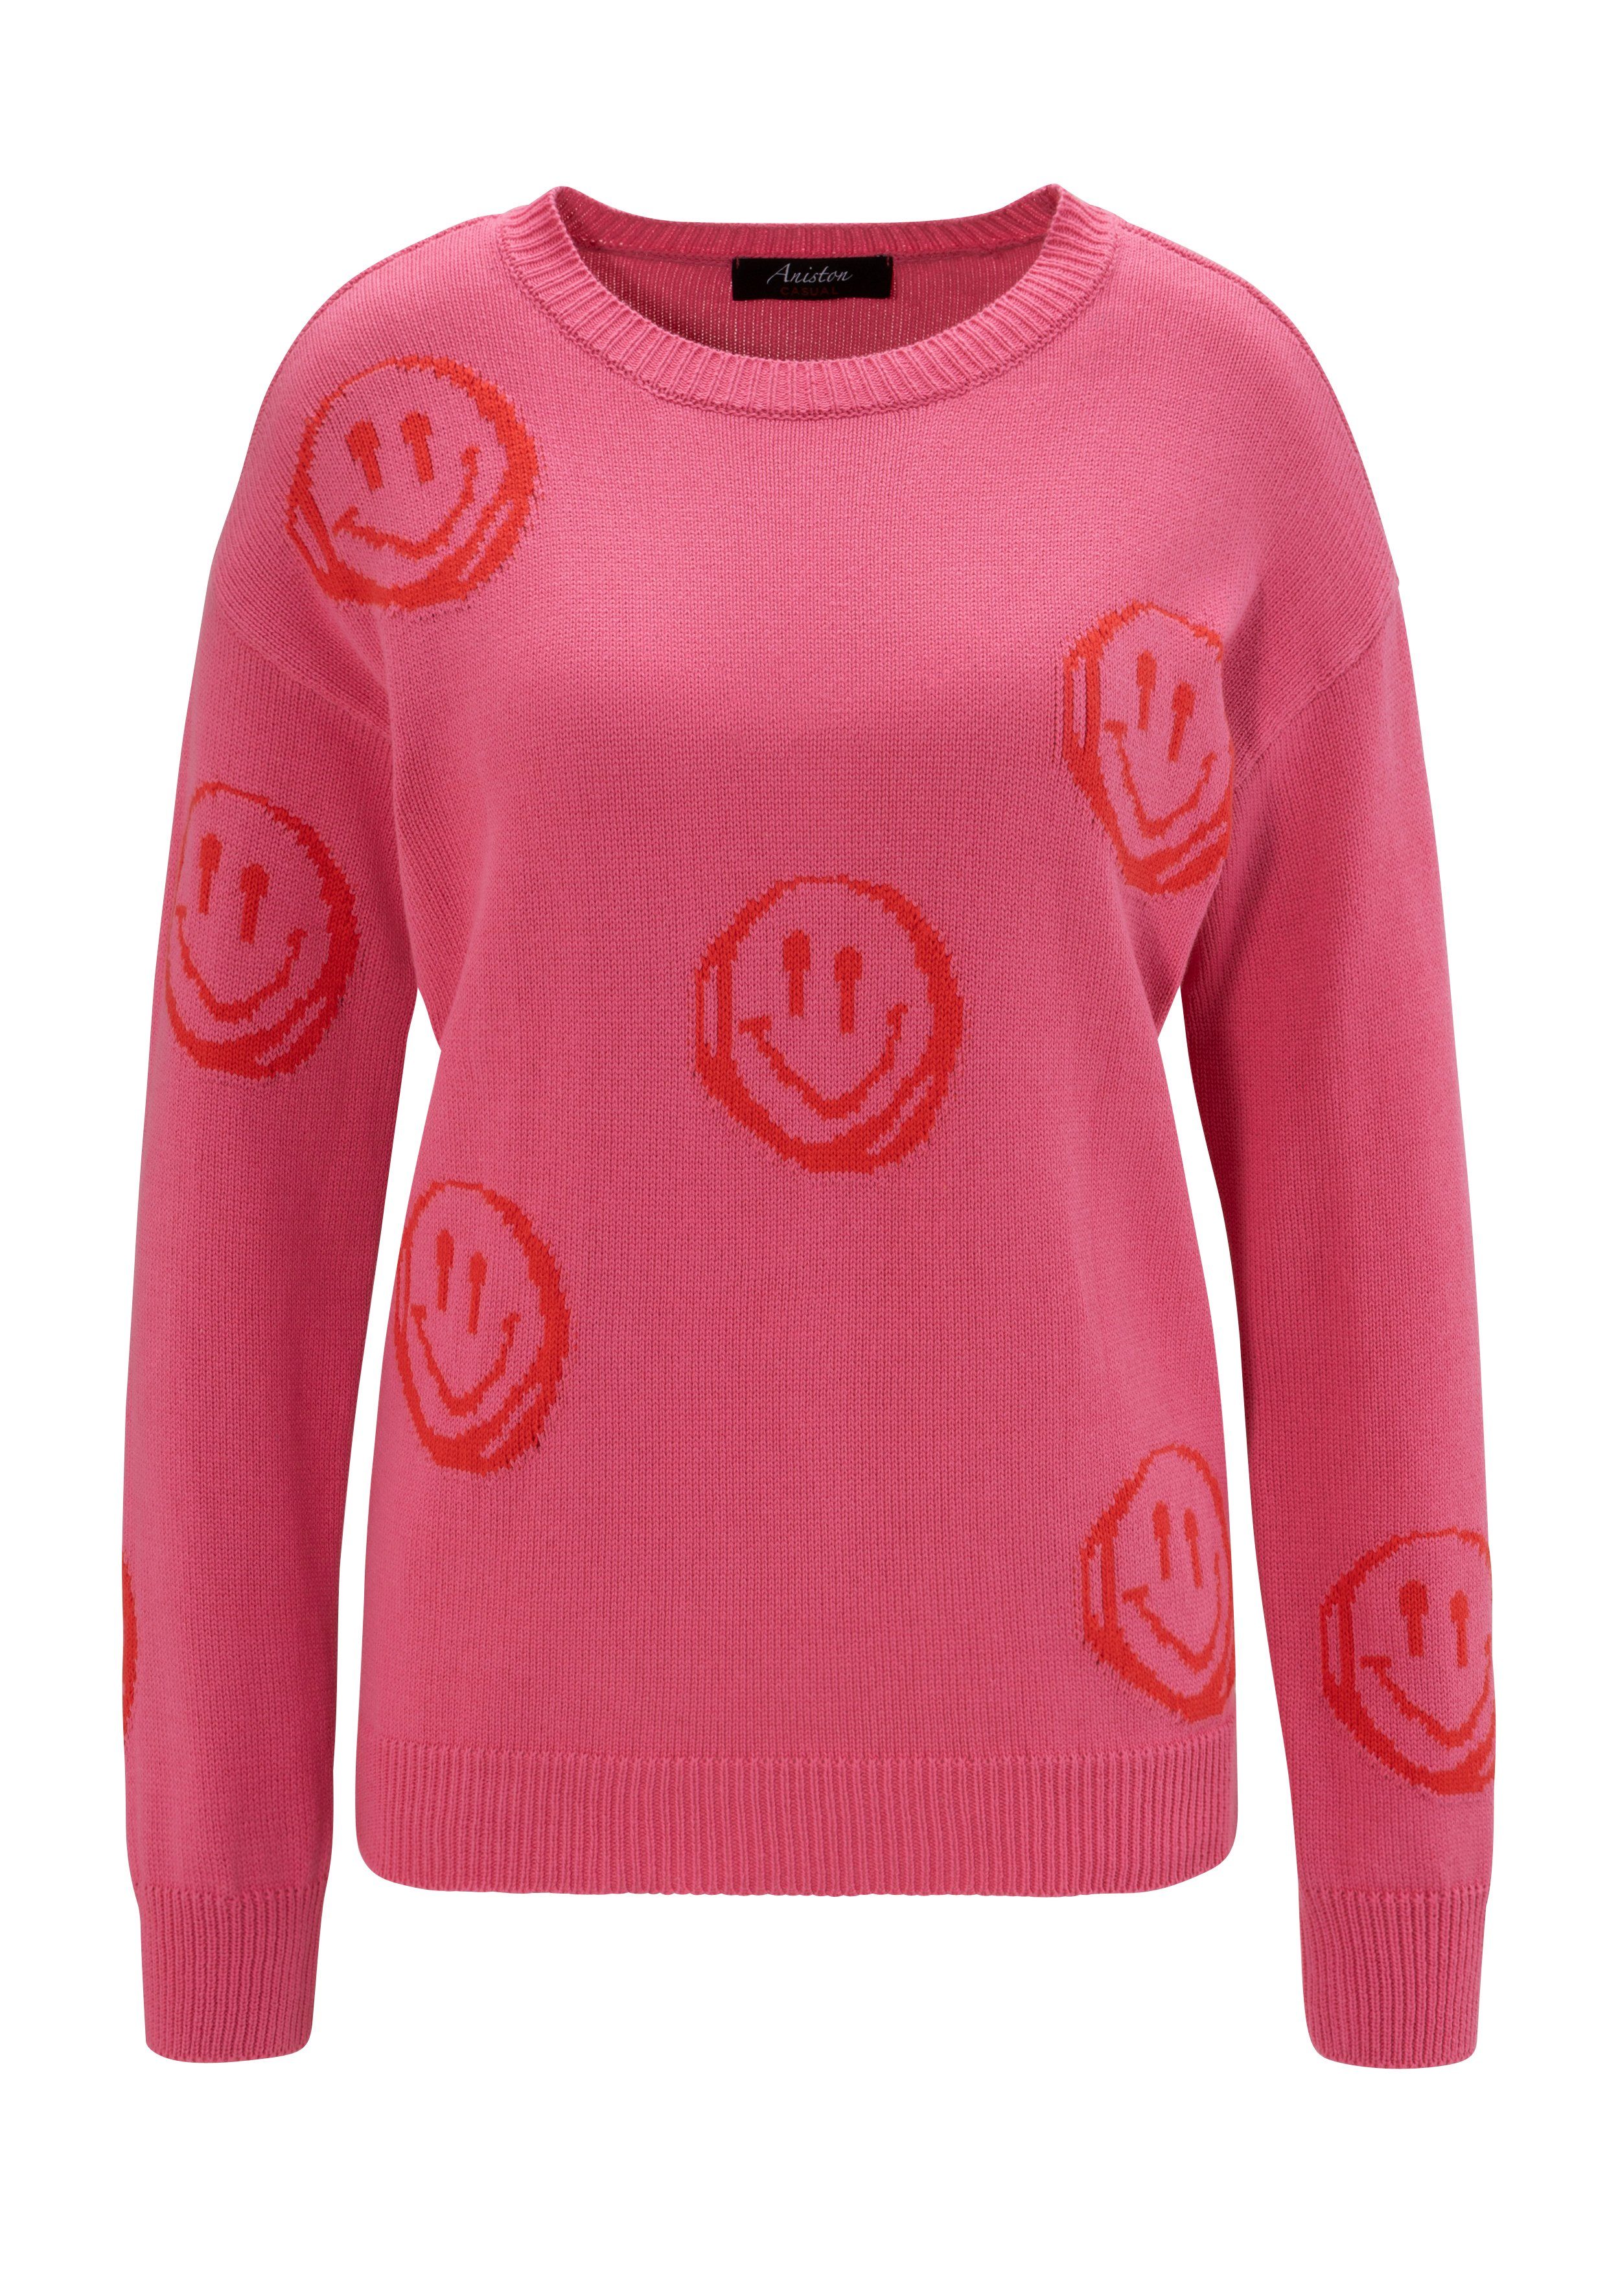 Aniston CASUAL Strickpullover mit eingestrickten KOLLEKTION Smileys pink-rot - NEUE